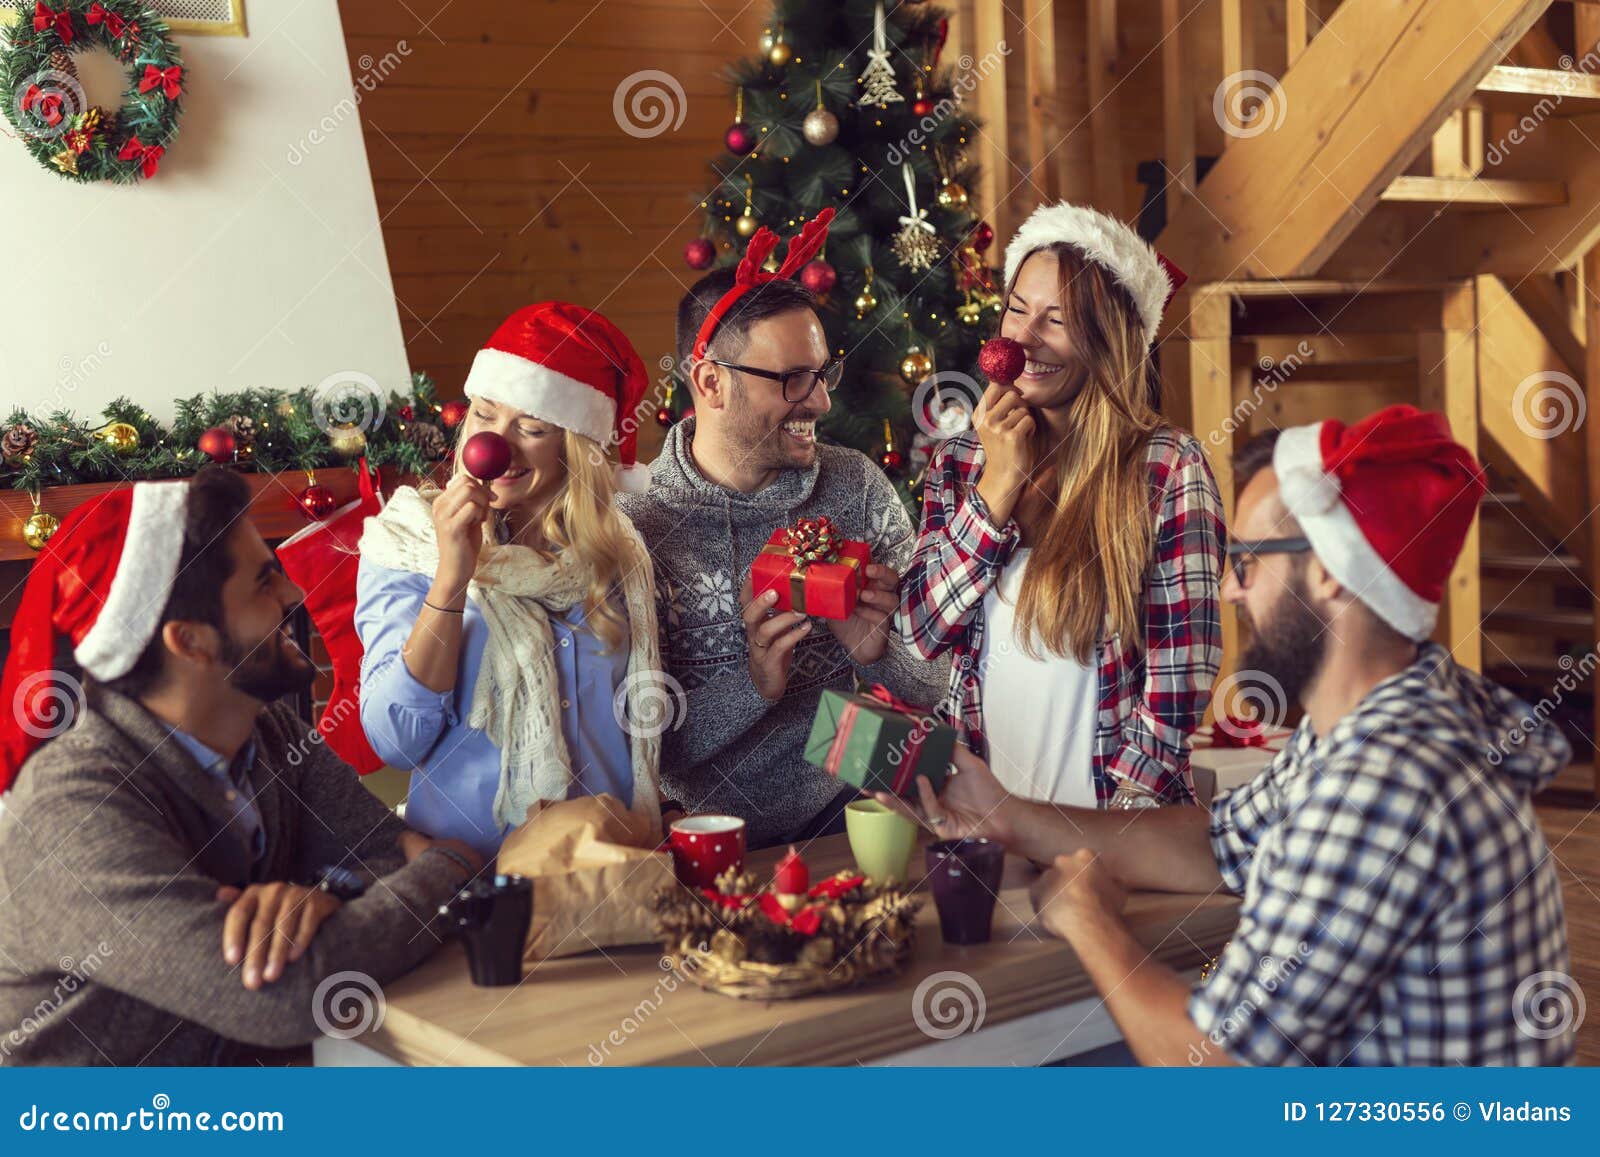 Regali Di Natale Ad Amici.Scambio Dei Regali Di Natale Fotografia Stock Immagine Di Svago Domestico 127330556